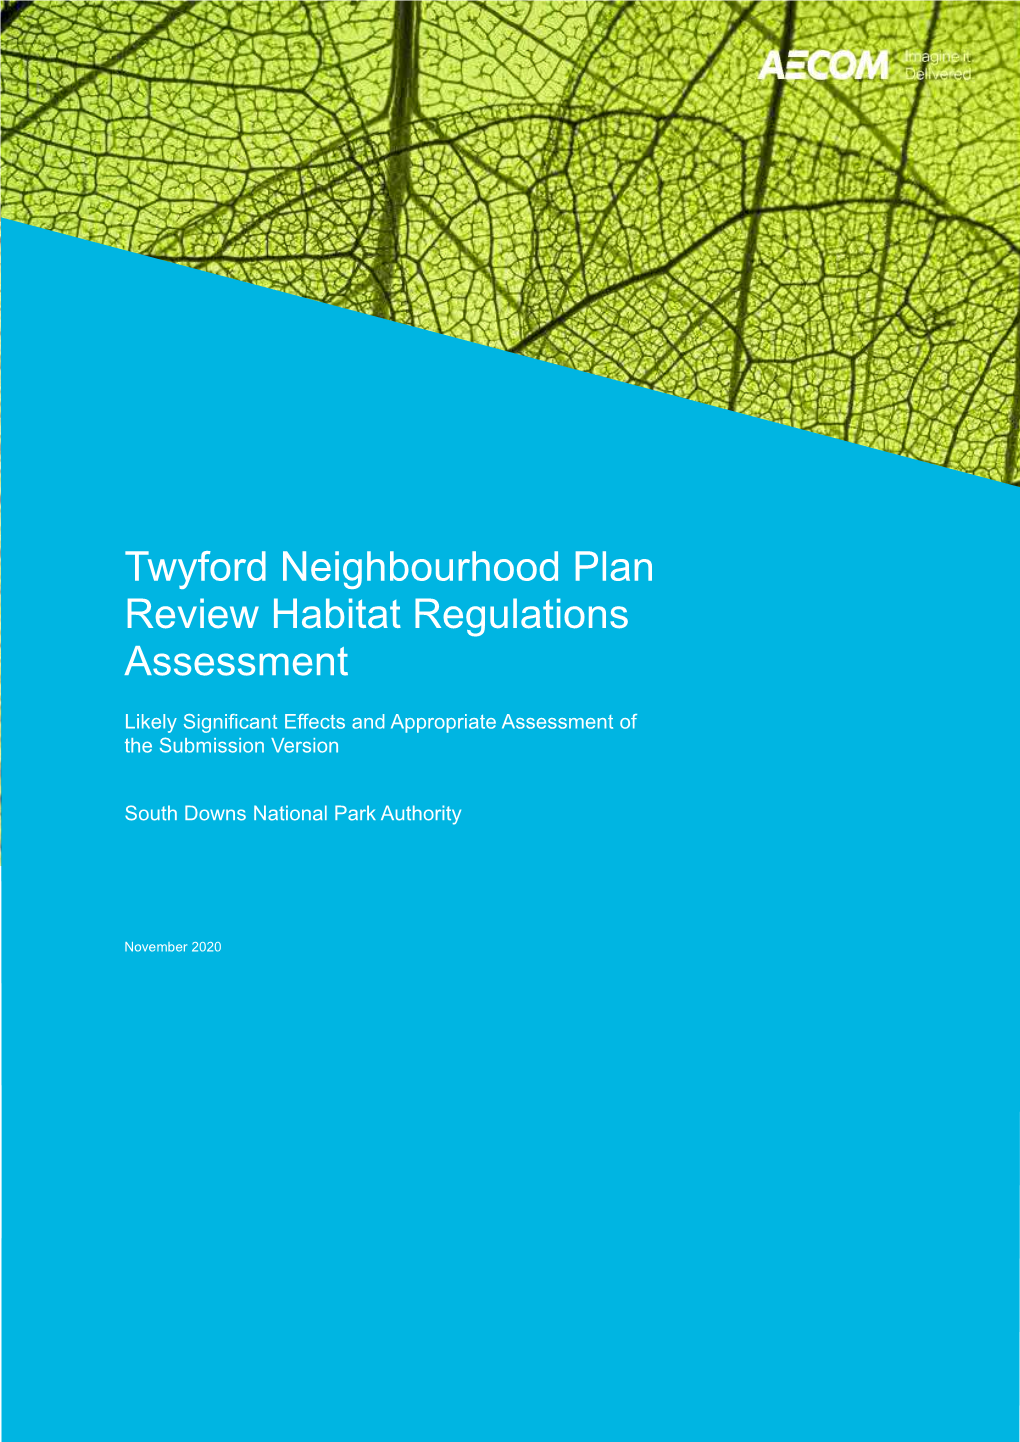 Twyford Neighbourhood Plan Habitats Regulation Assessment